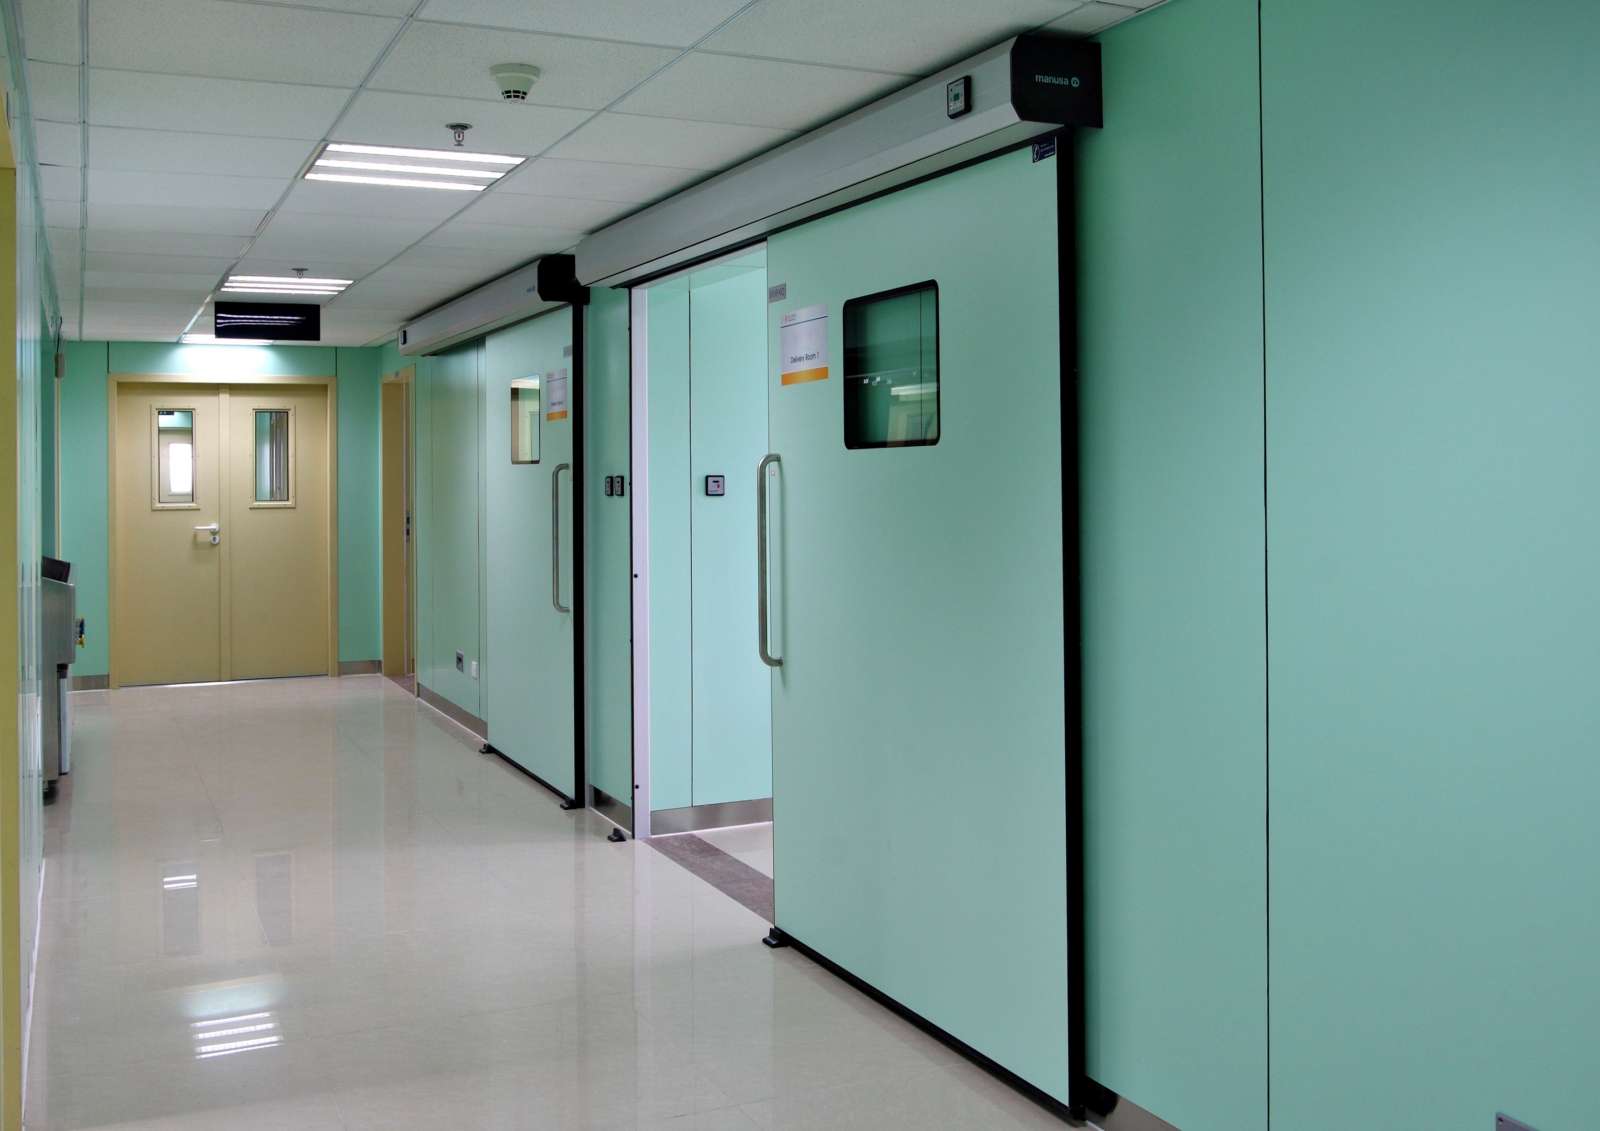 Tại sao bệnh viện cần lắp đặt cửa tự động